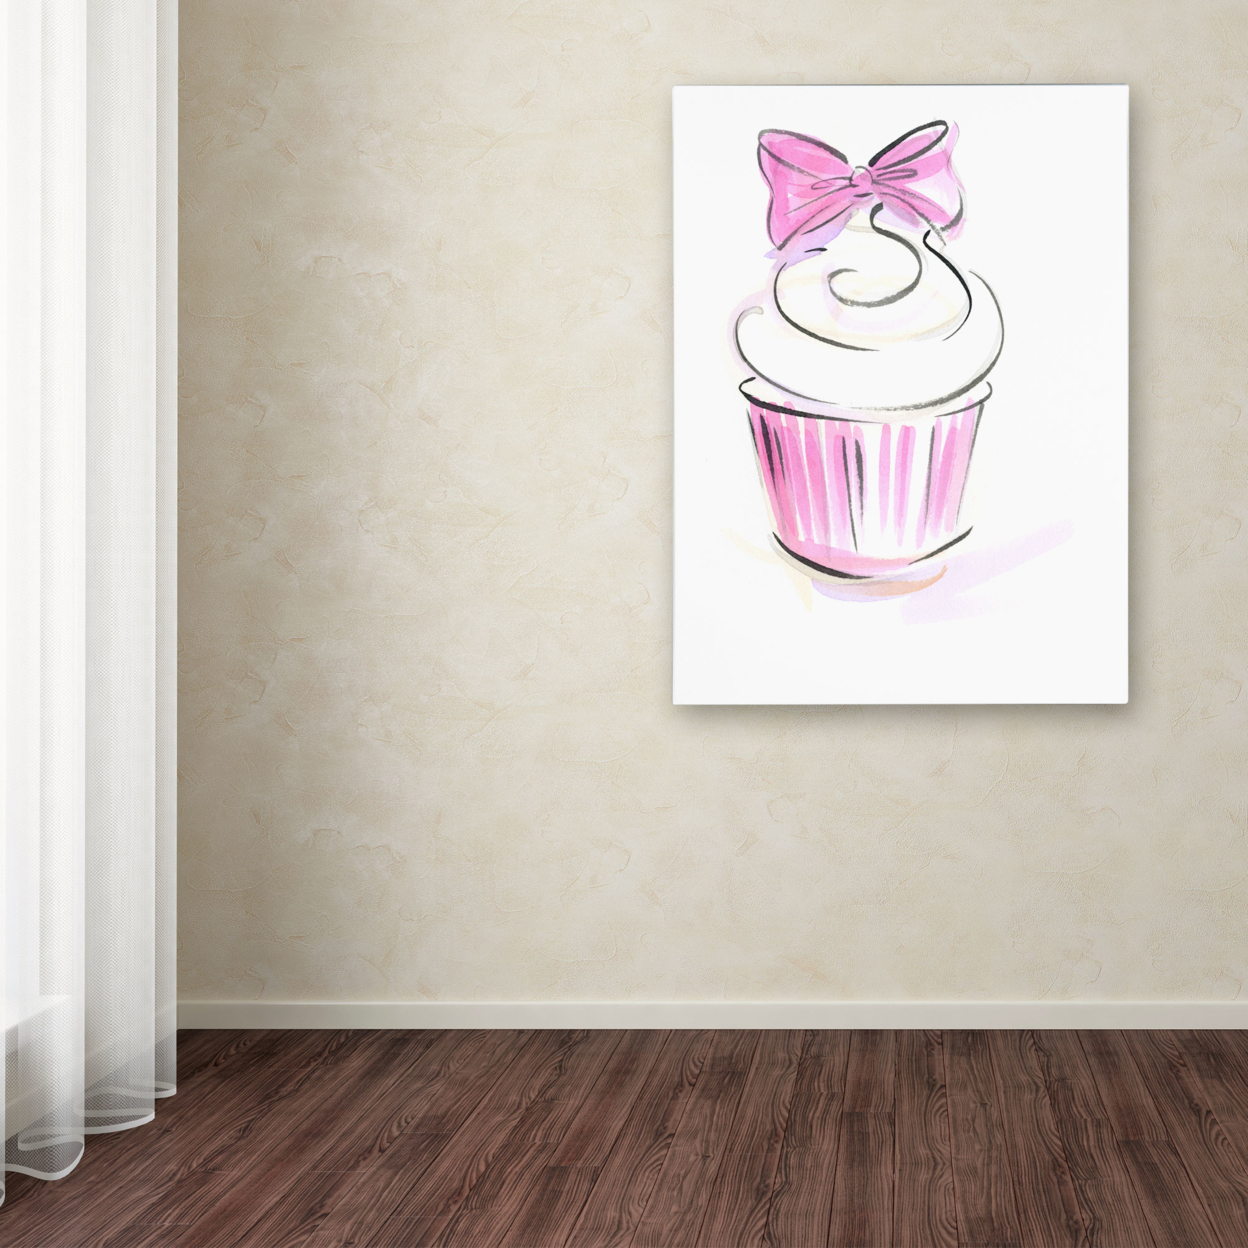 Jennifer Lilya 'Cupcake 3' Canvas Wall Art 35 X 47 Inches